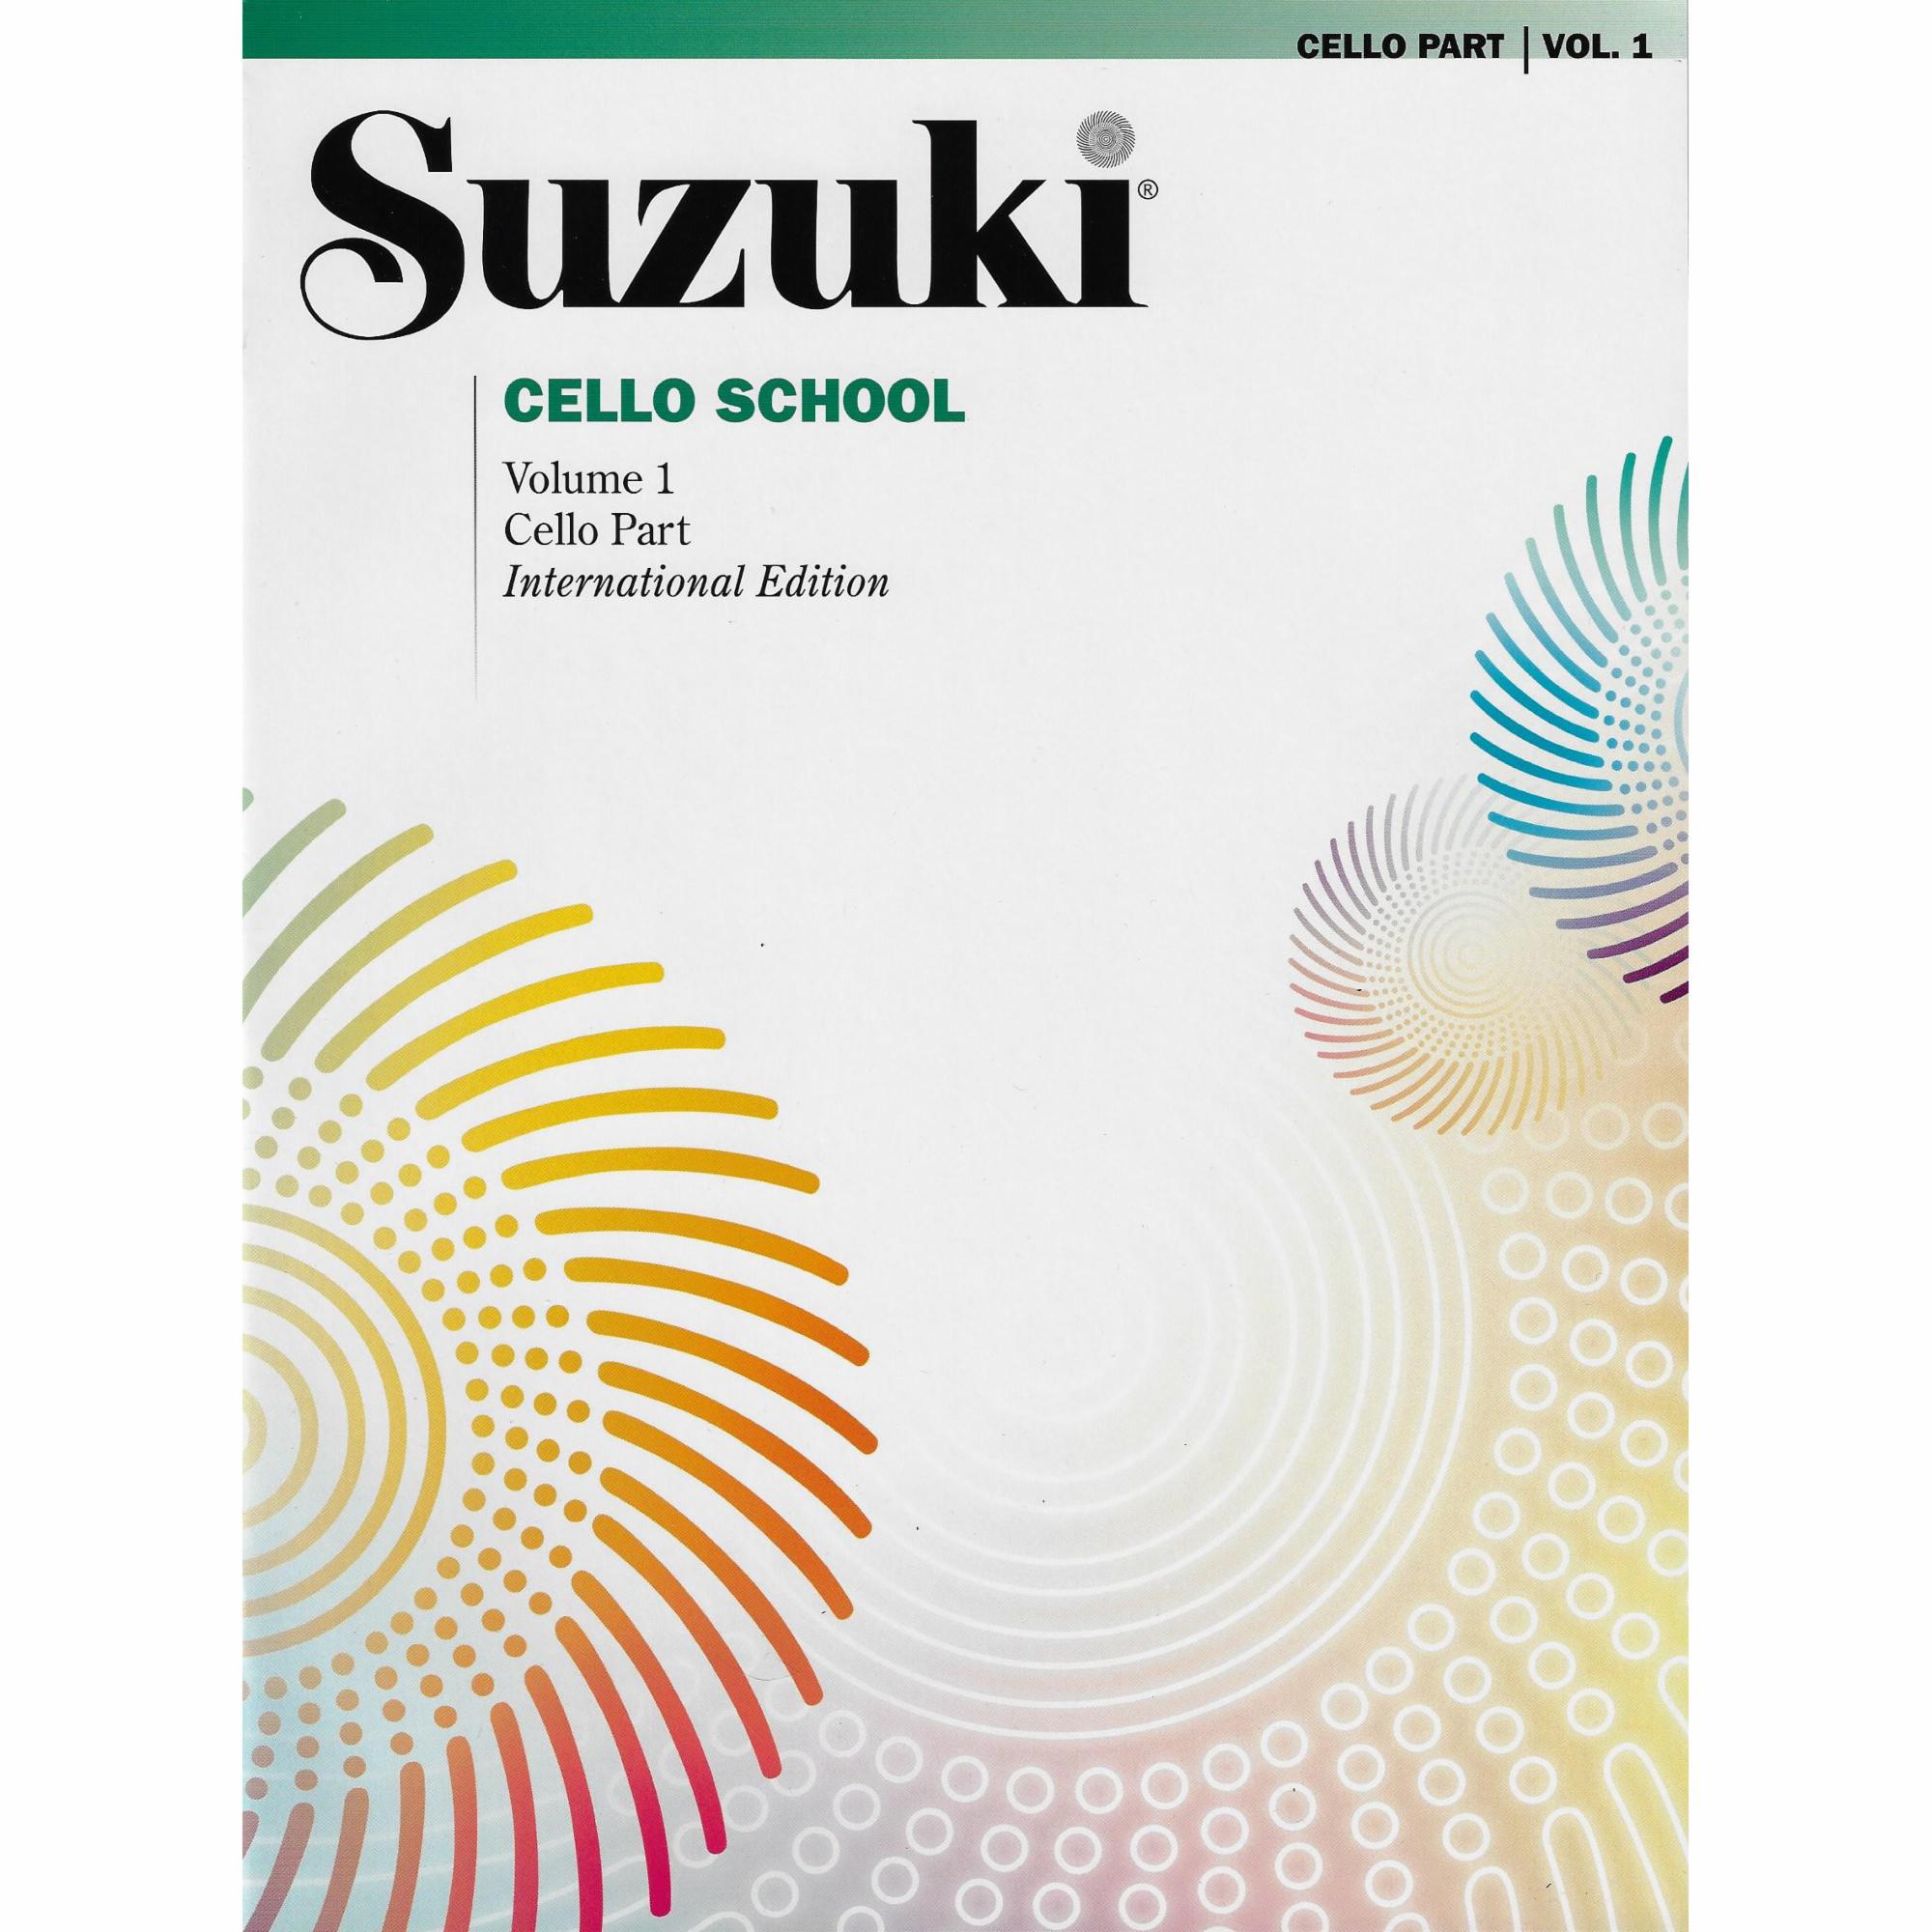 Suzuki Cello School: Cello Parts